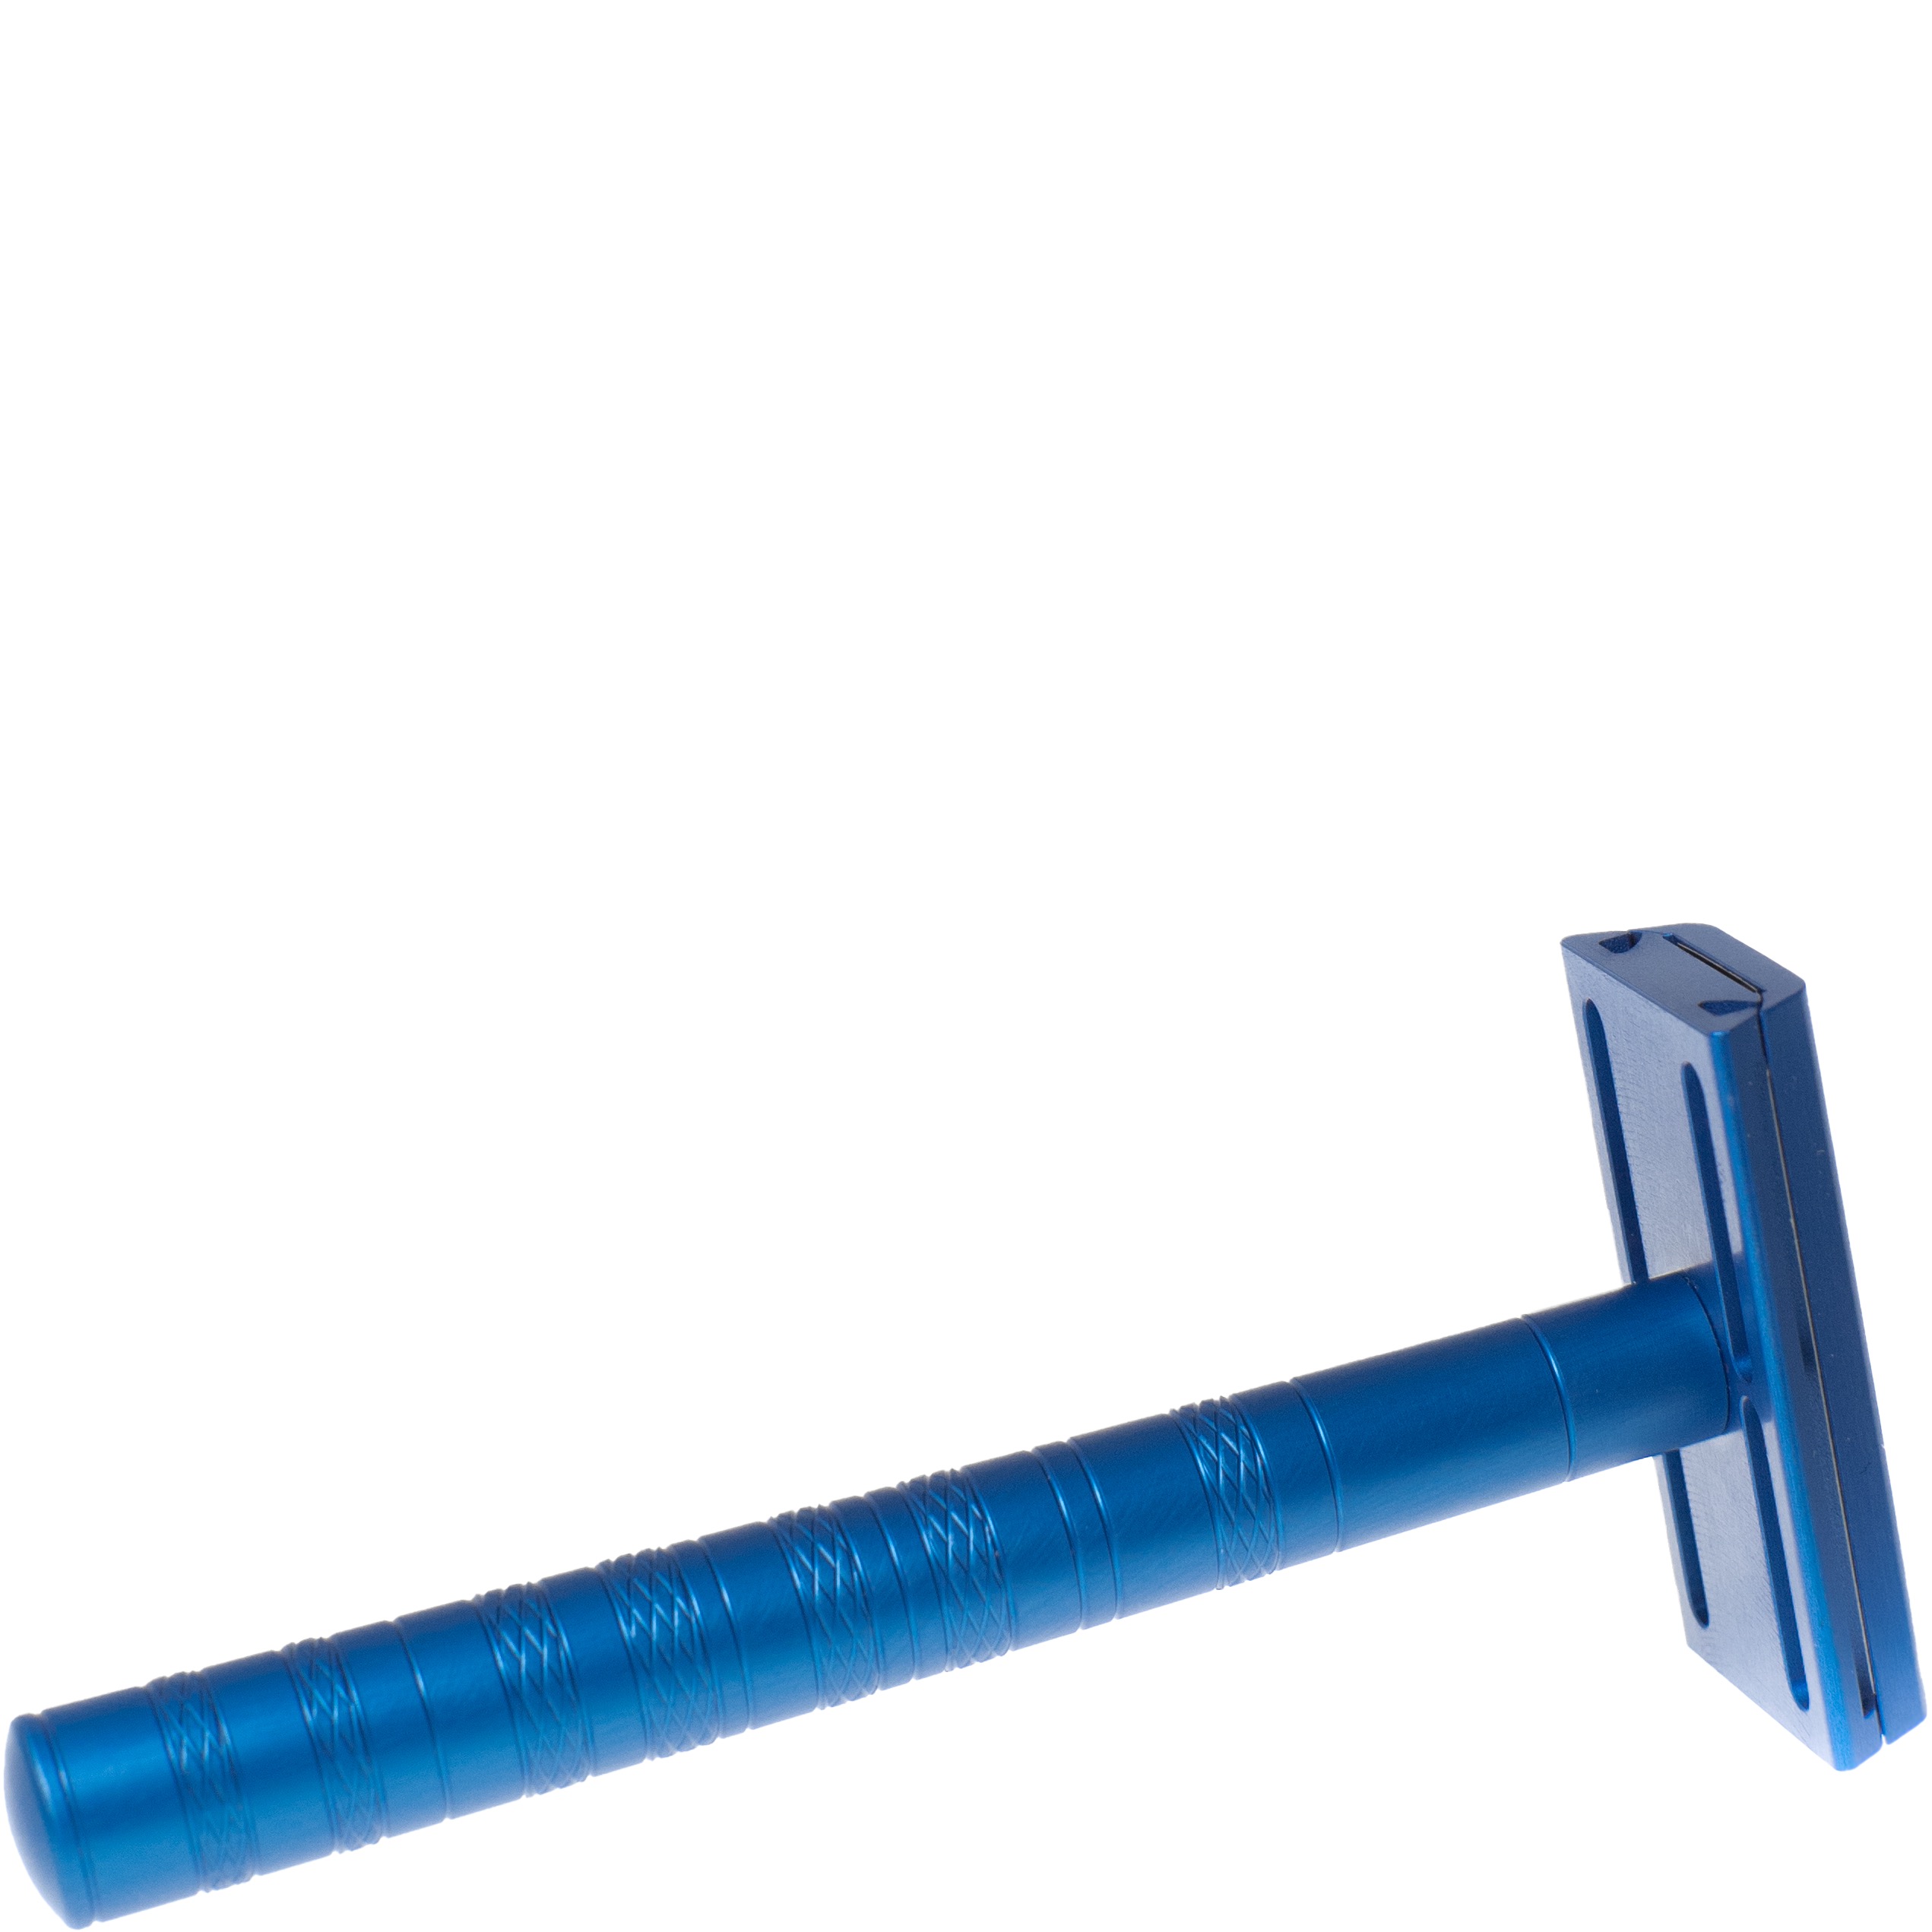 Henson Shaving Safety Razor AL13 Medium Steel Blue - 1.4 - HS-91395